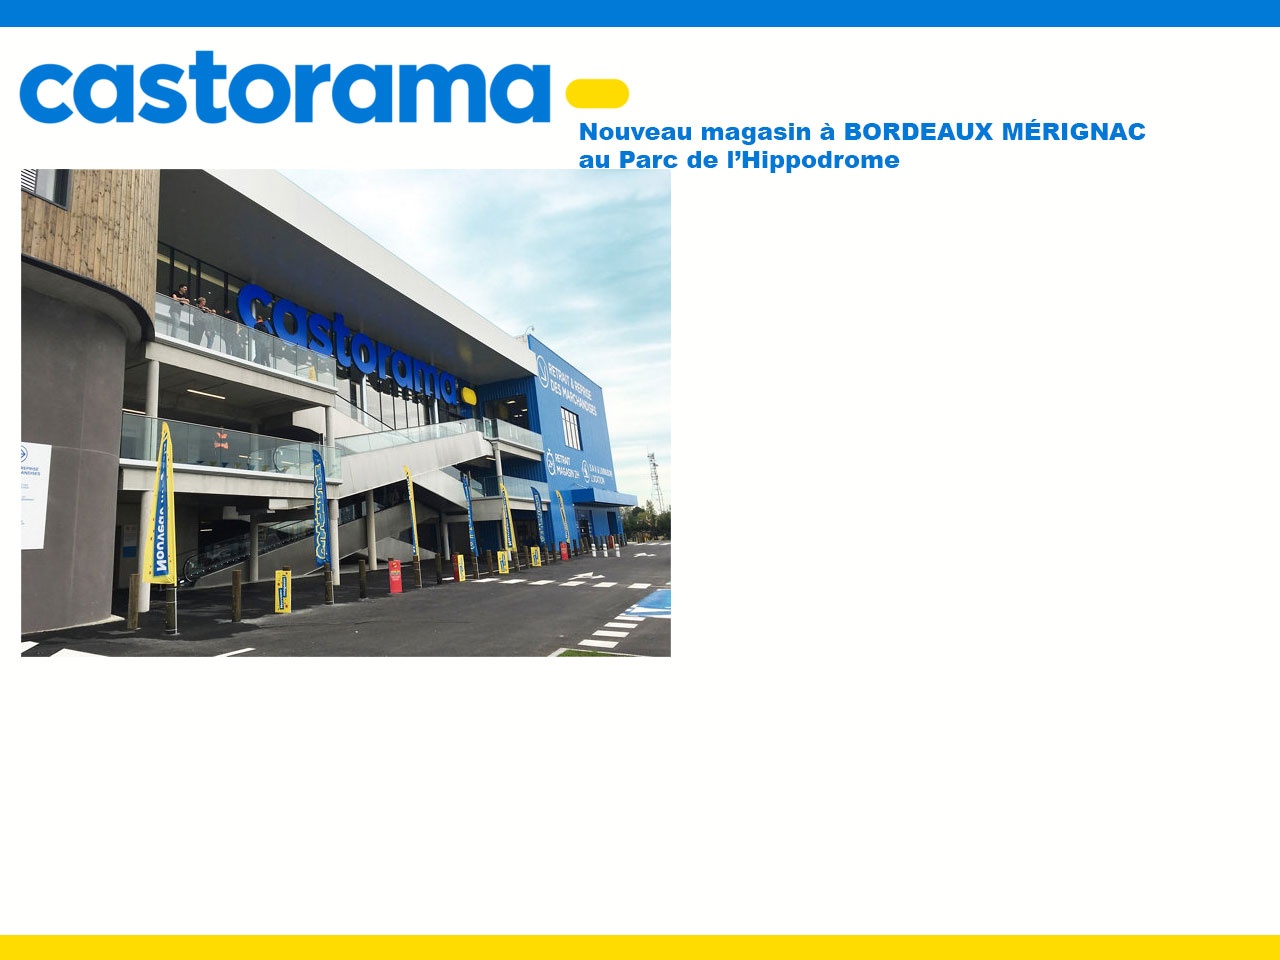 Le magasin Castorama de Bordeaux Mérignac a déménagé pour mieux se reconstruire